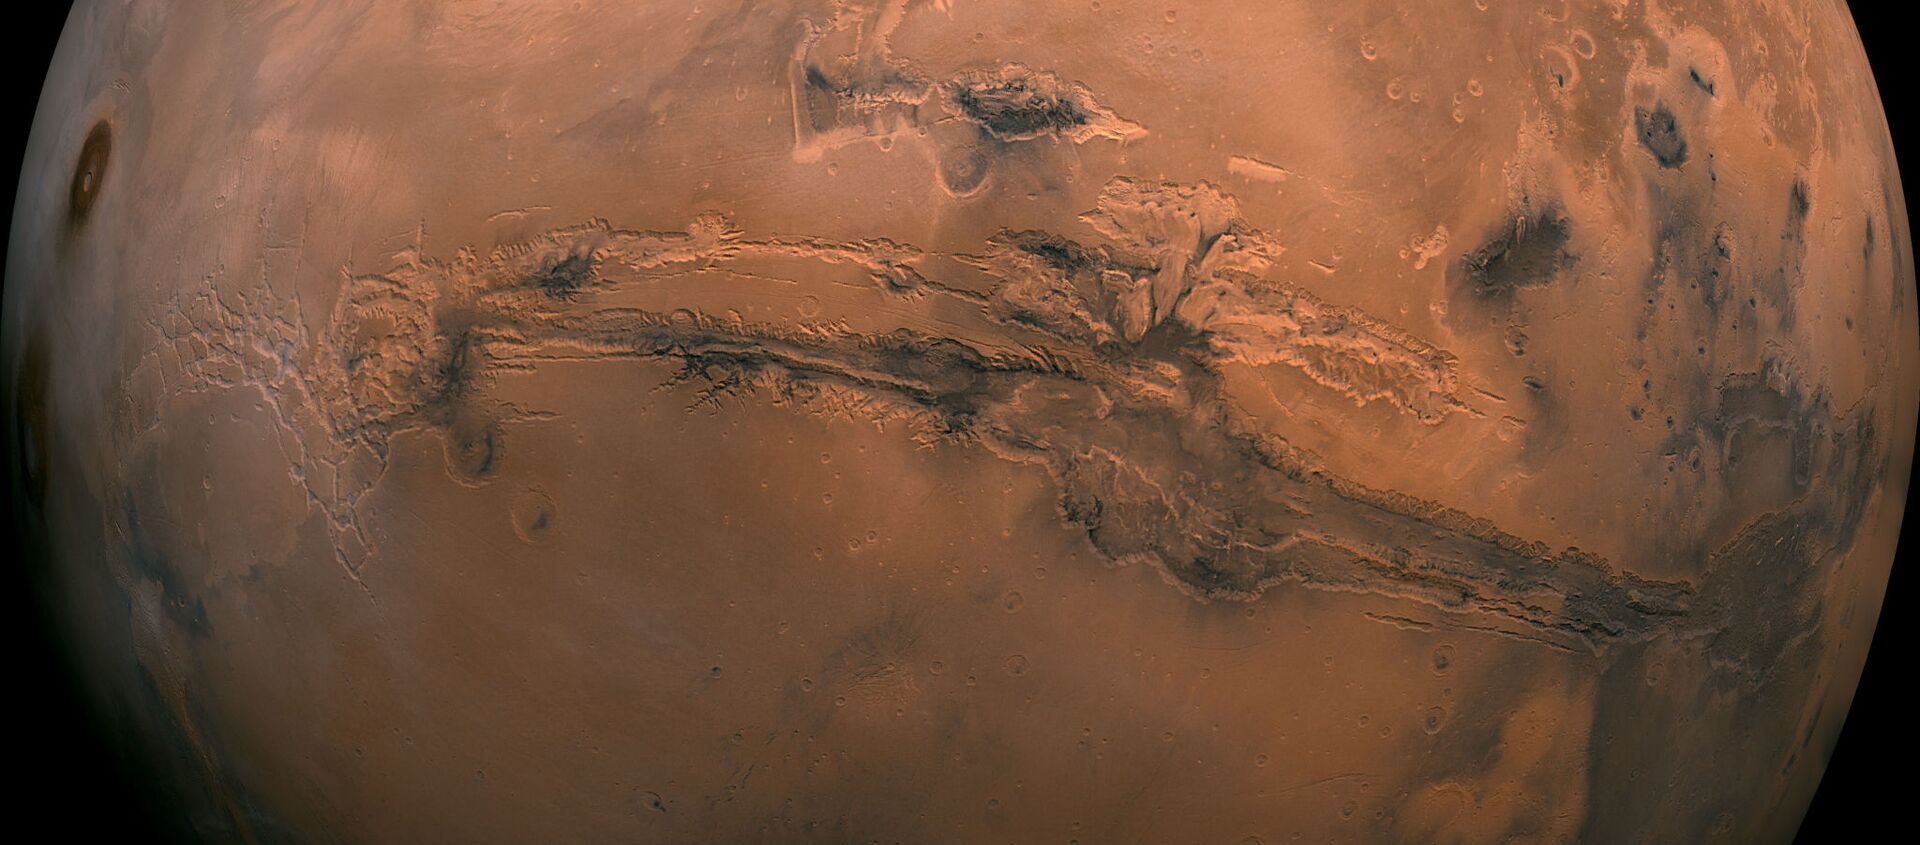 Мозаика полушария Марса в долинах Маринер - Sputnik Узбекистан, 1920, 21.02.2021